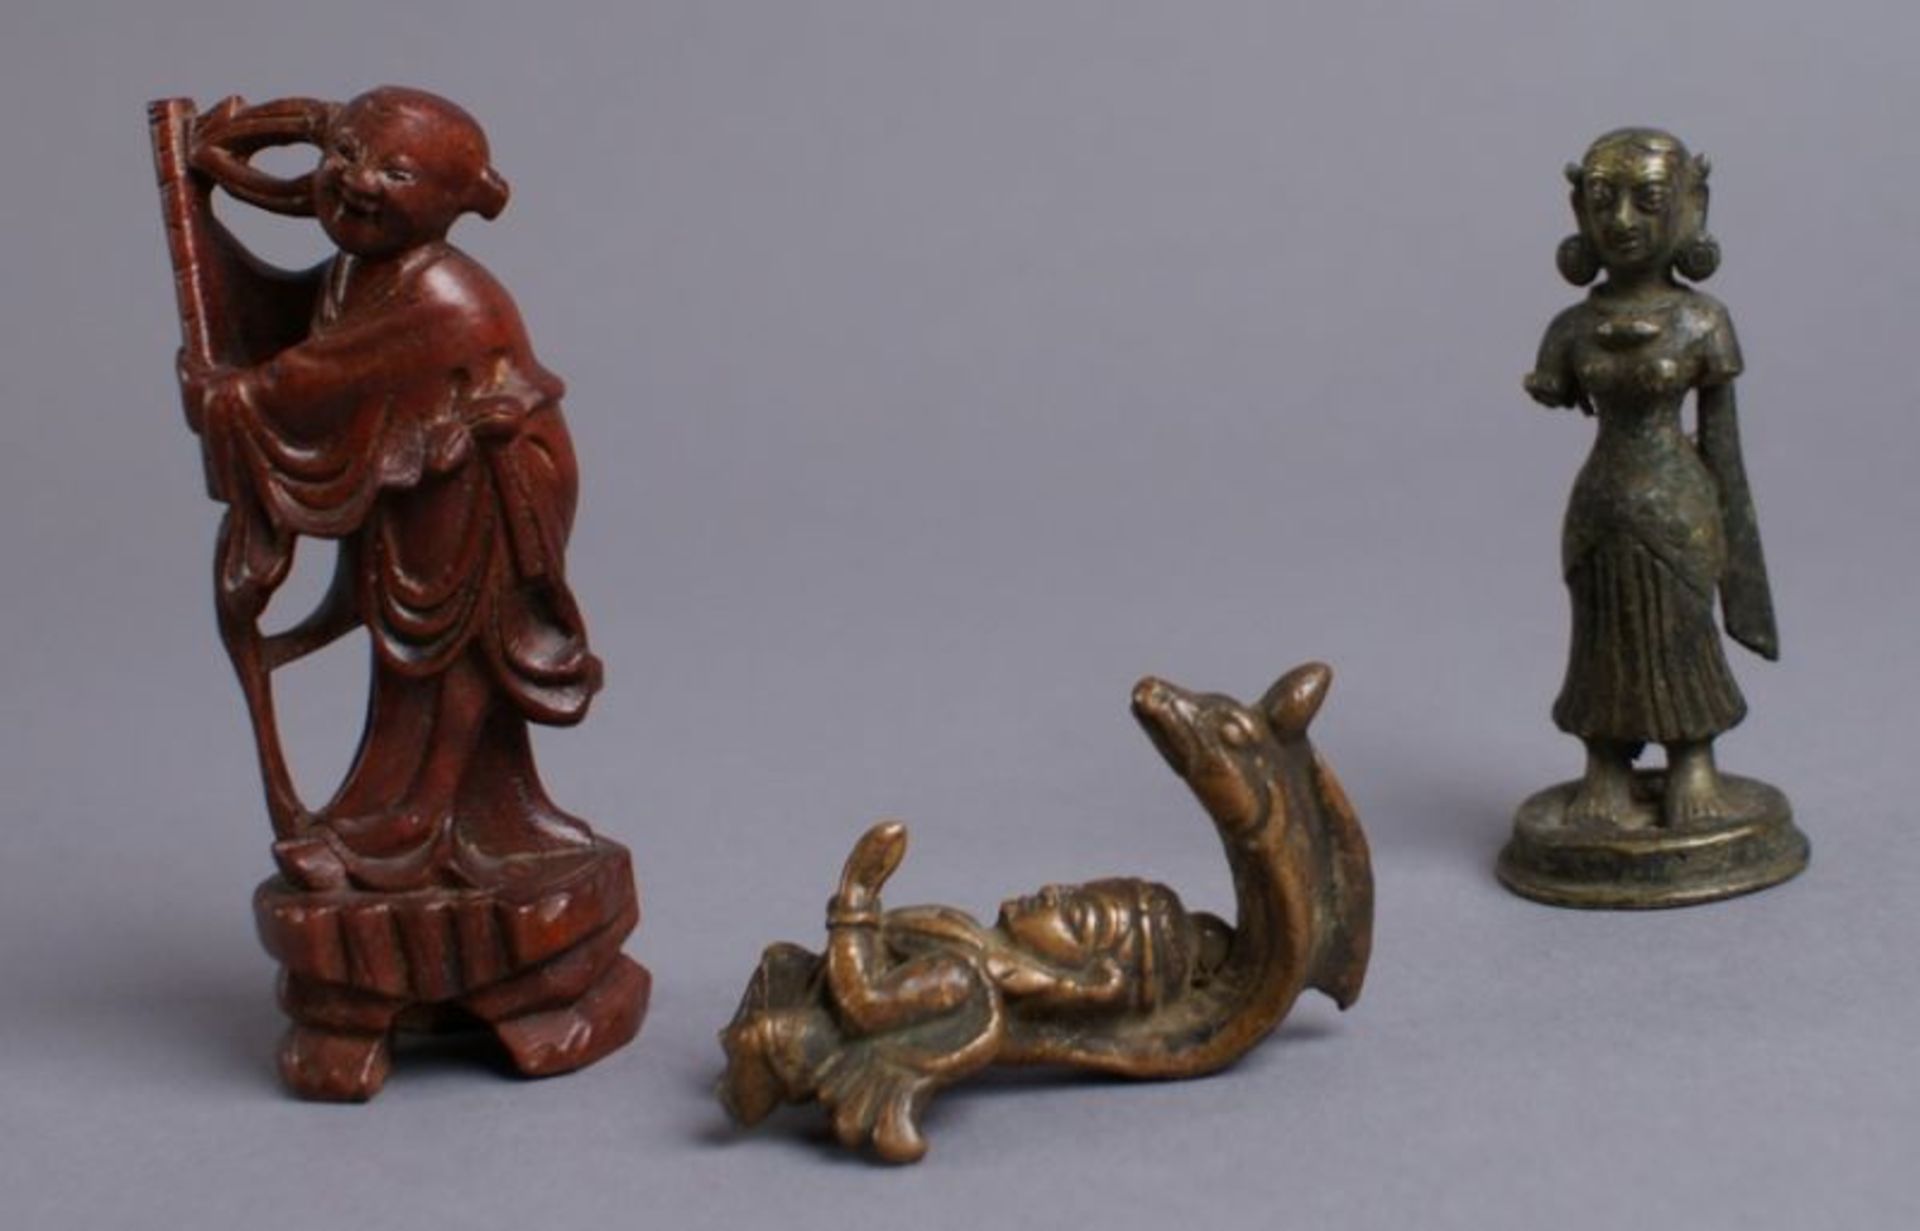 KONVOLUT ASIATISCHE SKULPTUREN 19. JH, aus Holz und Bronze gearbeitete Figuren, H 6,5, 8,5, 10,5 - Bild 4 aus 5